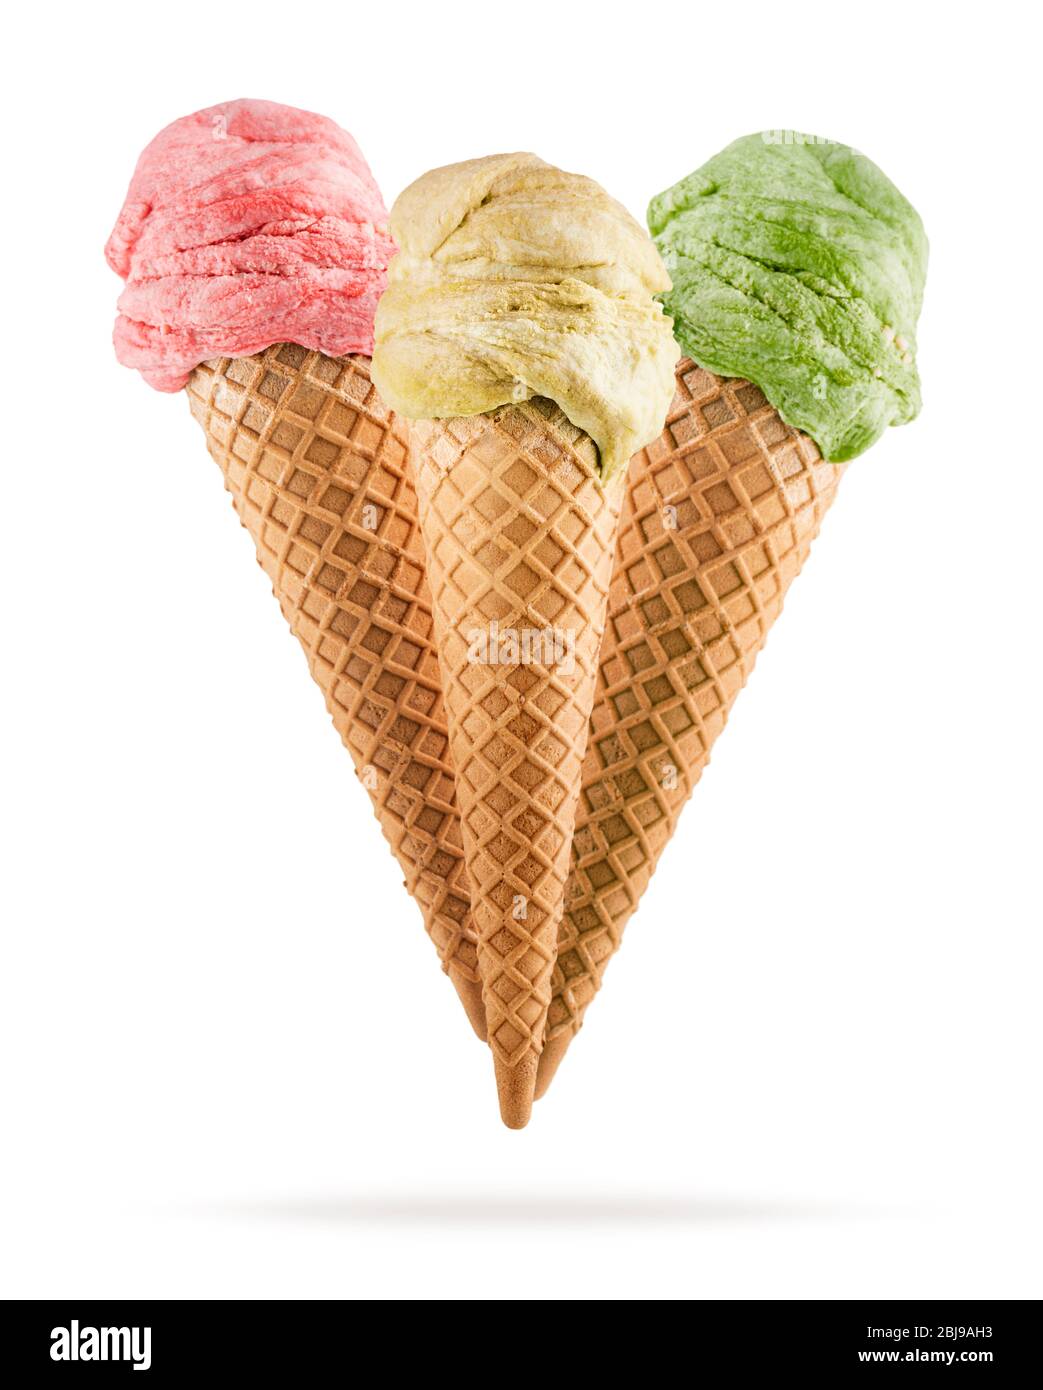 Eiszapfen mit verschiedenen Geschmacksrichtungen auf weißem Hintergrund Stockfoto